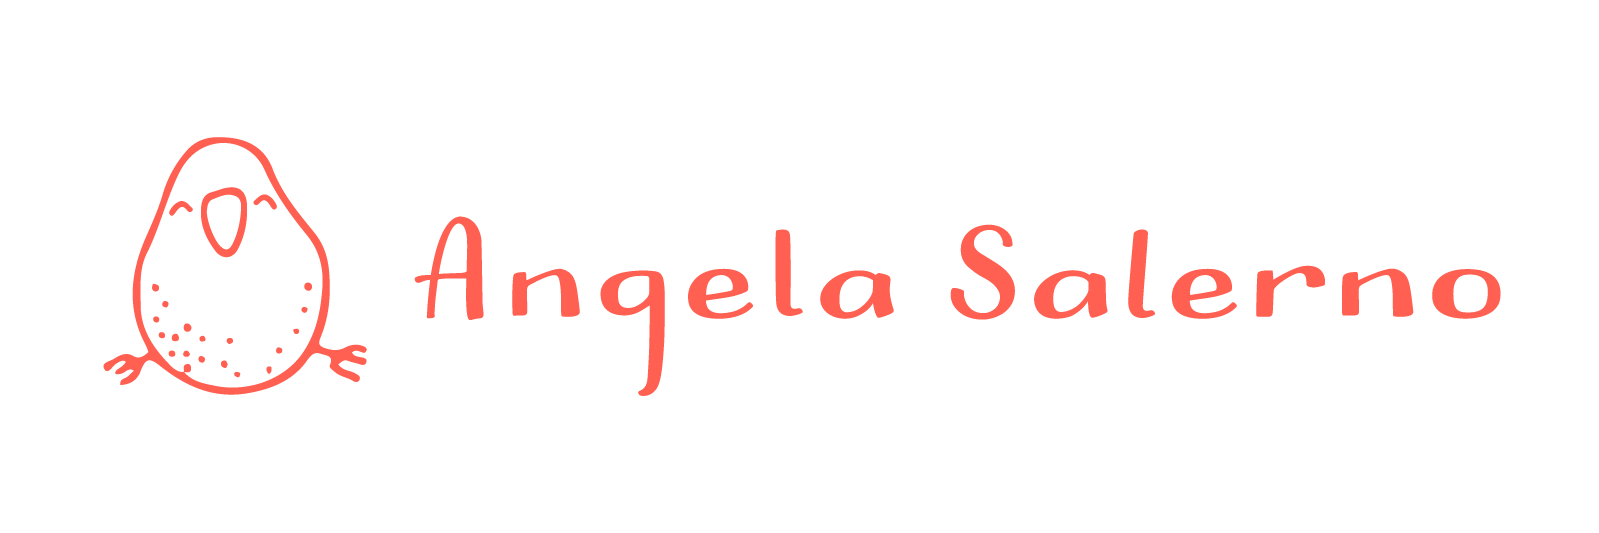 Angela Salerno